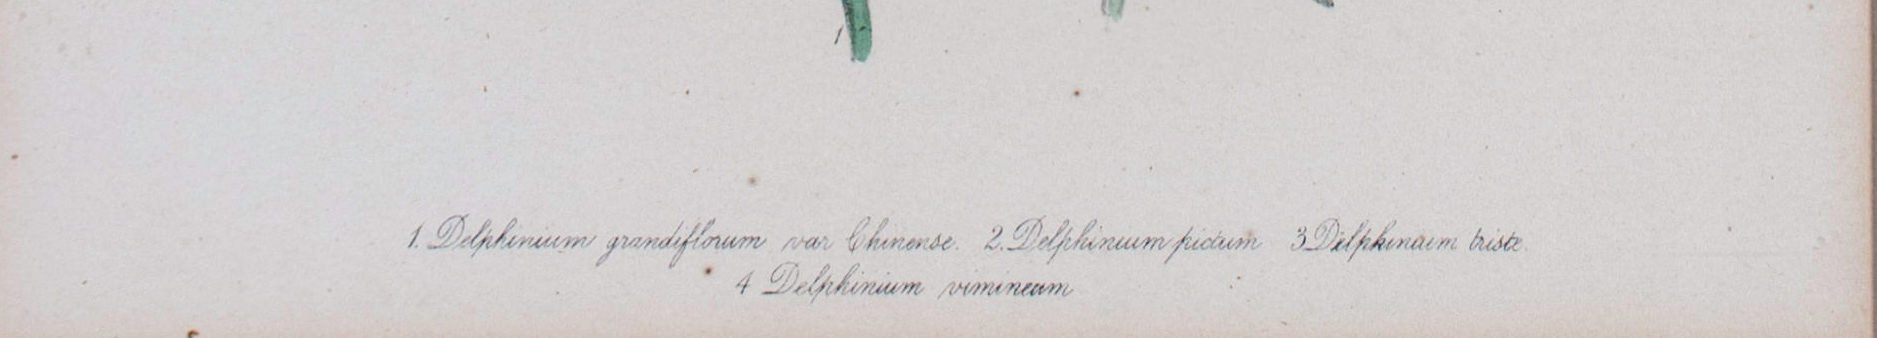 Three Hand colored Botanical prints Delphinium, Aquilegia, Matthiola